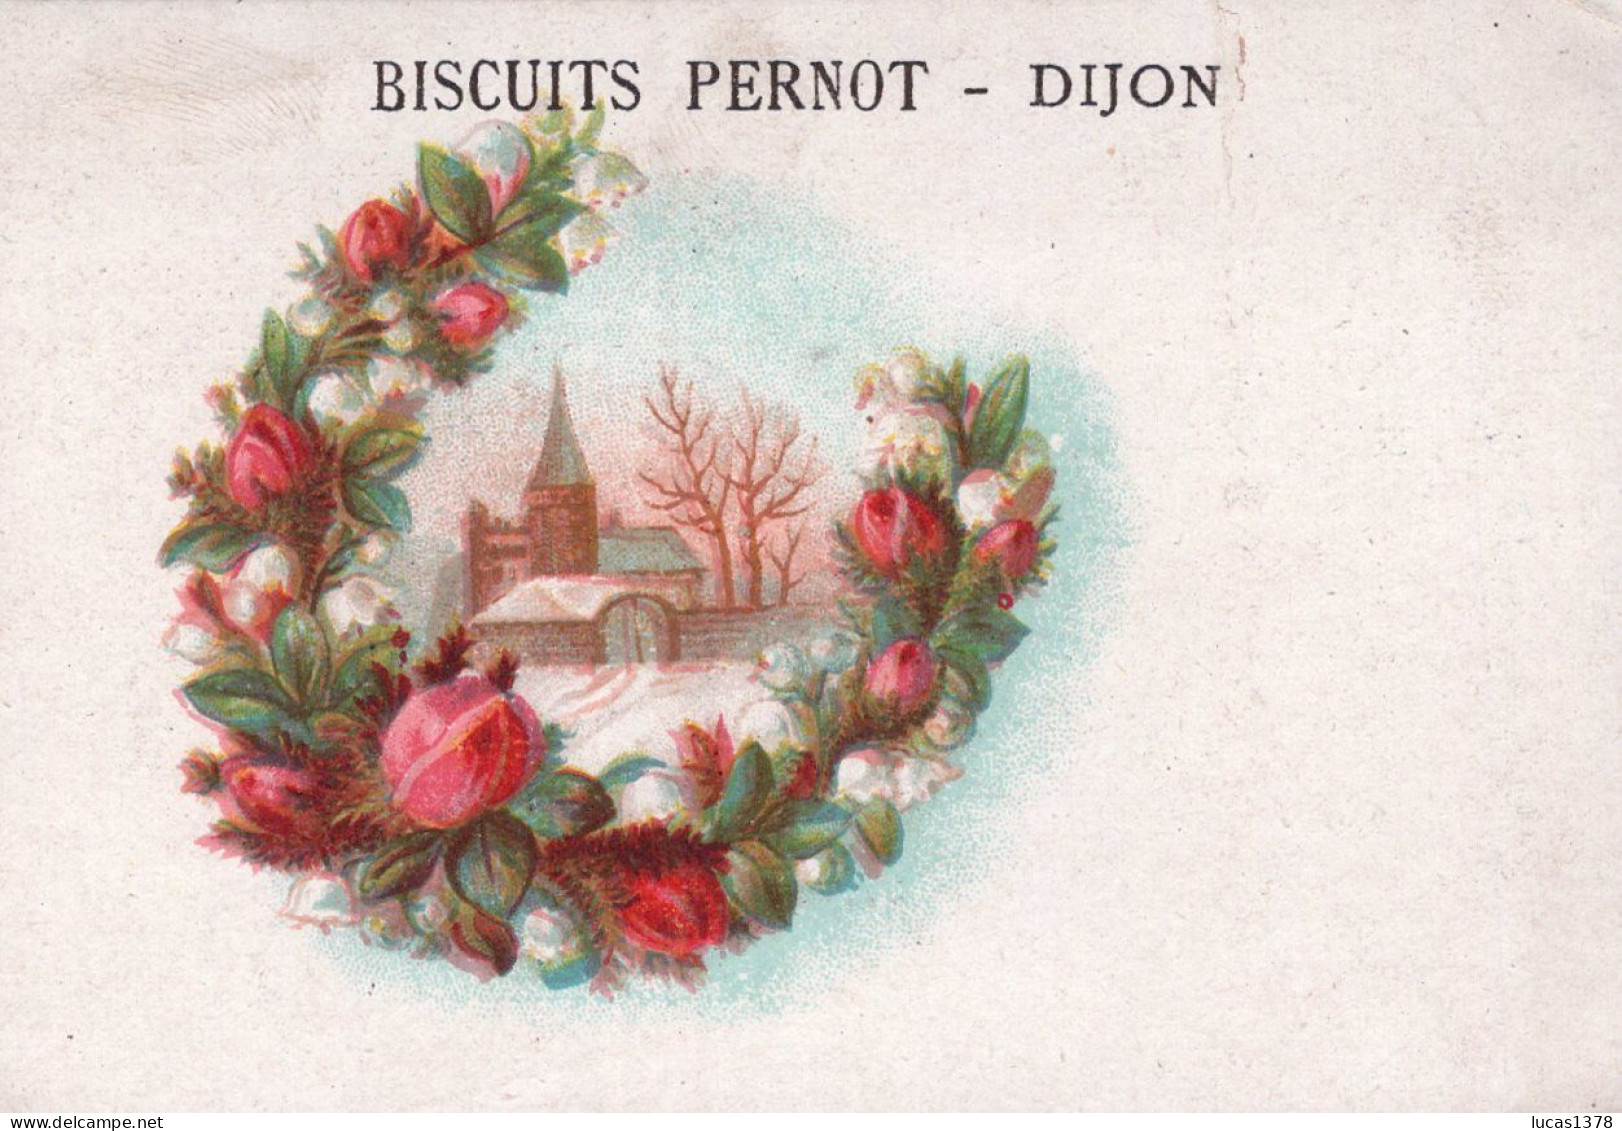 19 CHROMOS.Biscuits Pernot. Dijon / RARE ET TRES JOLI LOT / Paysages avec encadrement fleurs